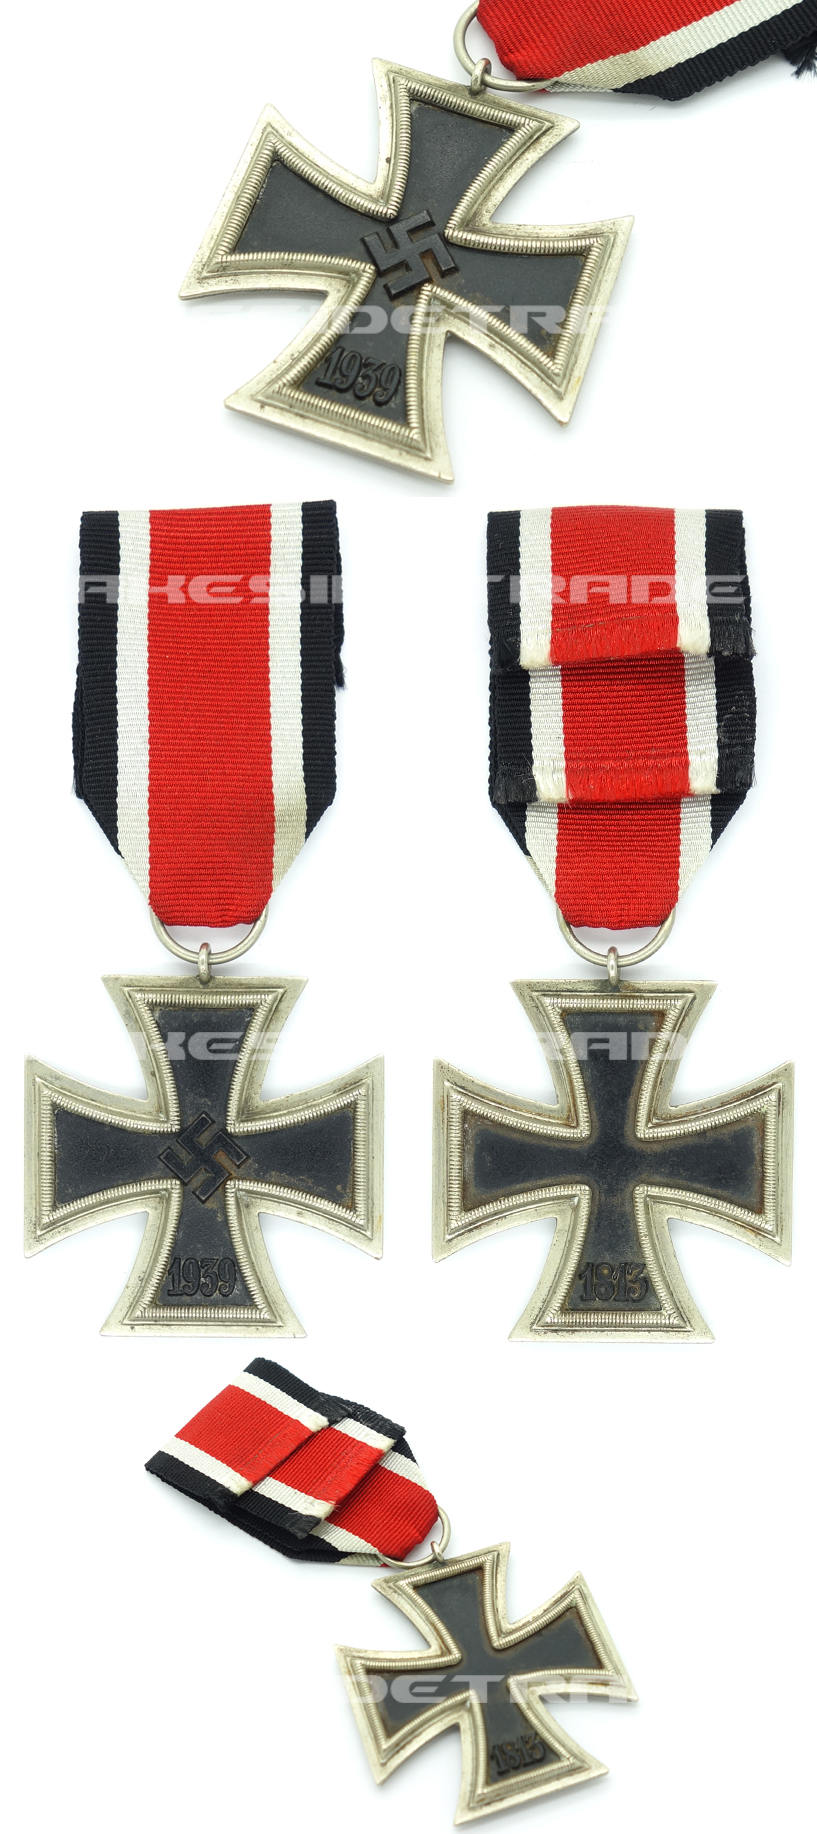 2nd Class Iron Cross by AG Berlin